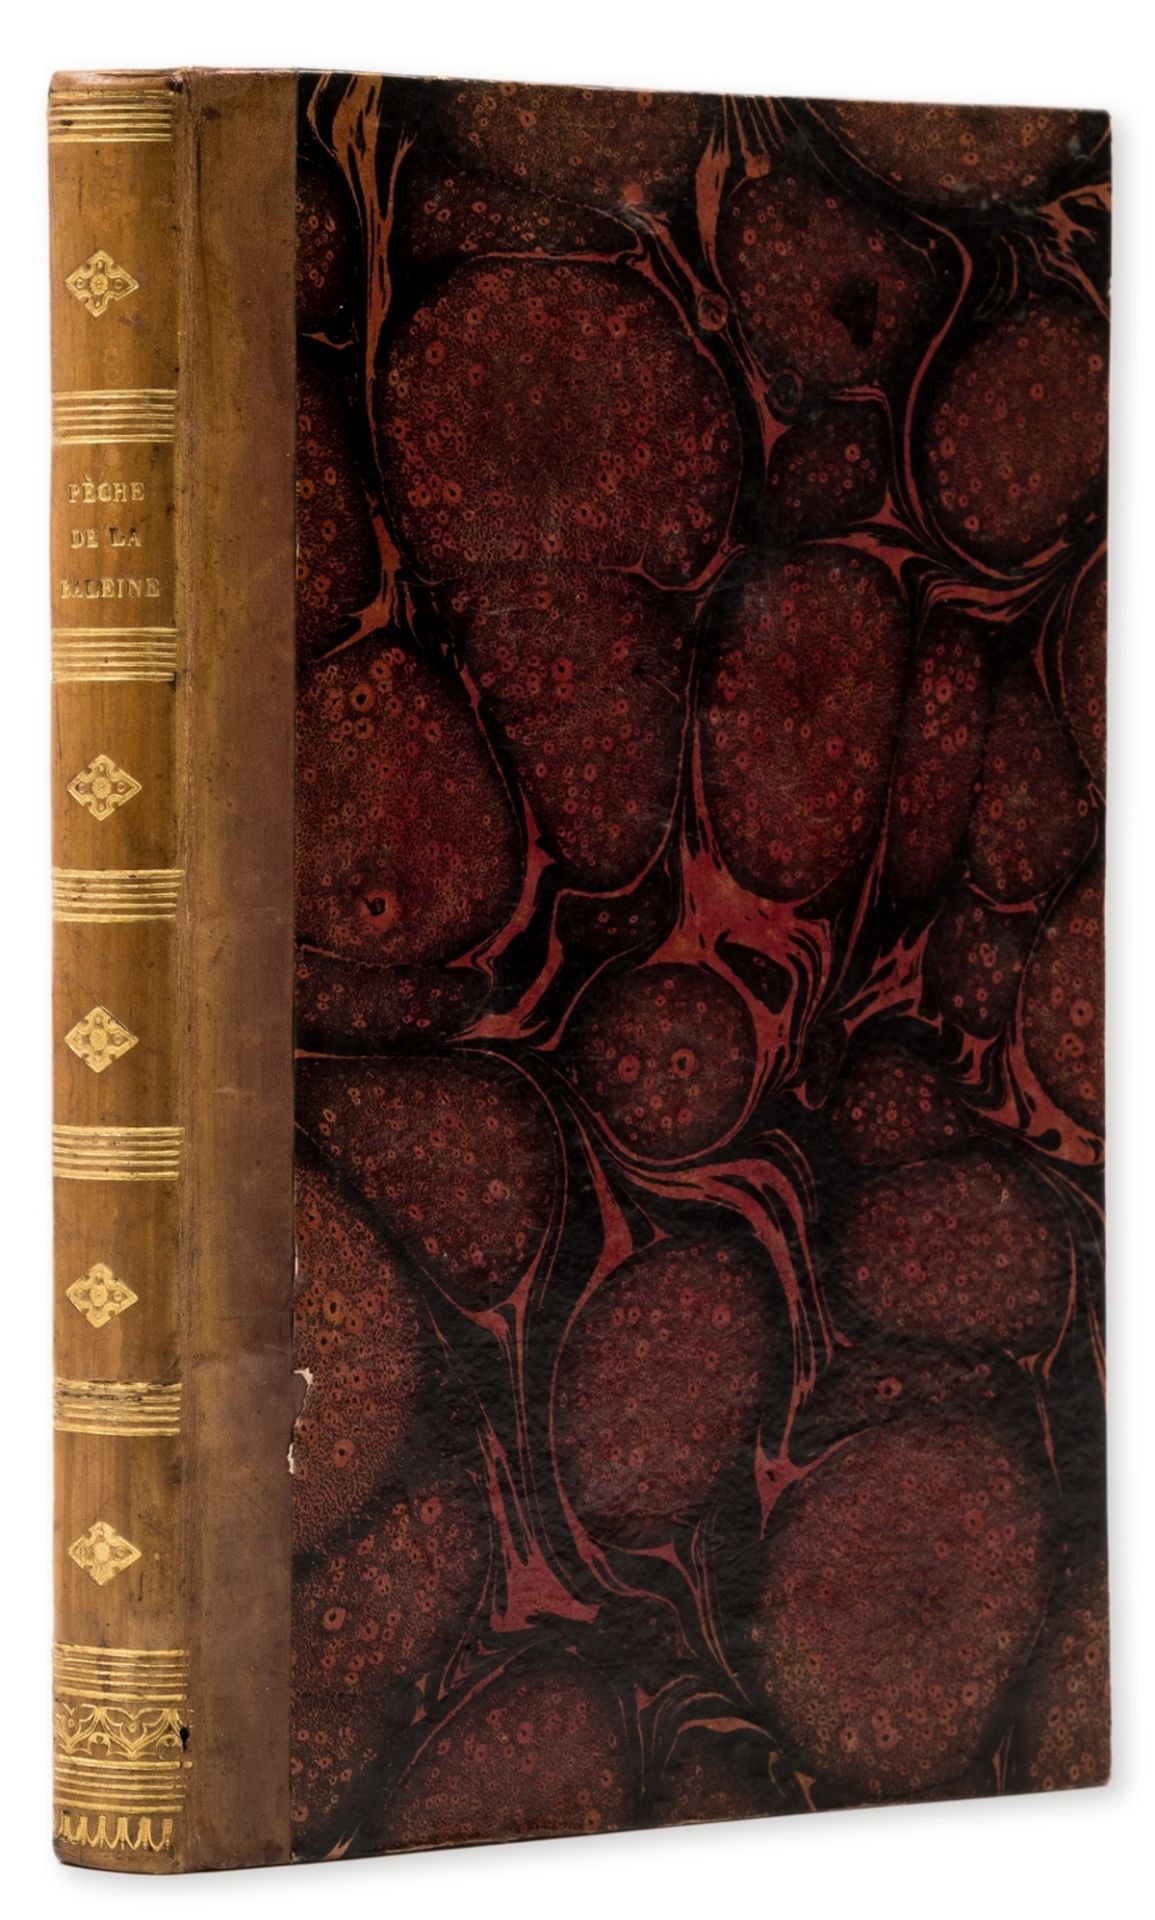 Whaling.- Lecomte (Jules) Pratique de la Pèche de la Baleine dans les Mers du Sud, Paris, 1833.